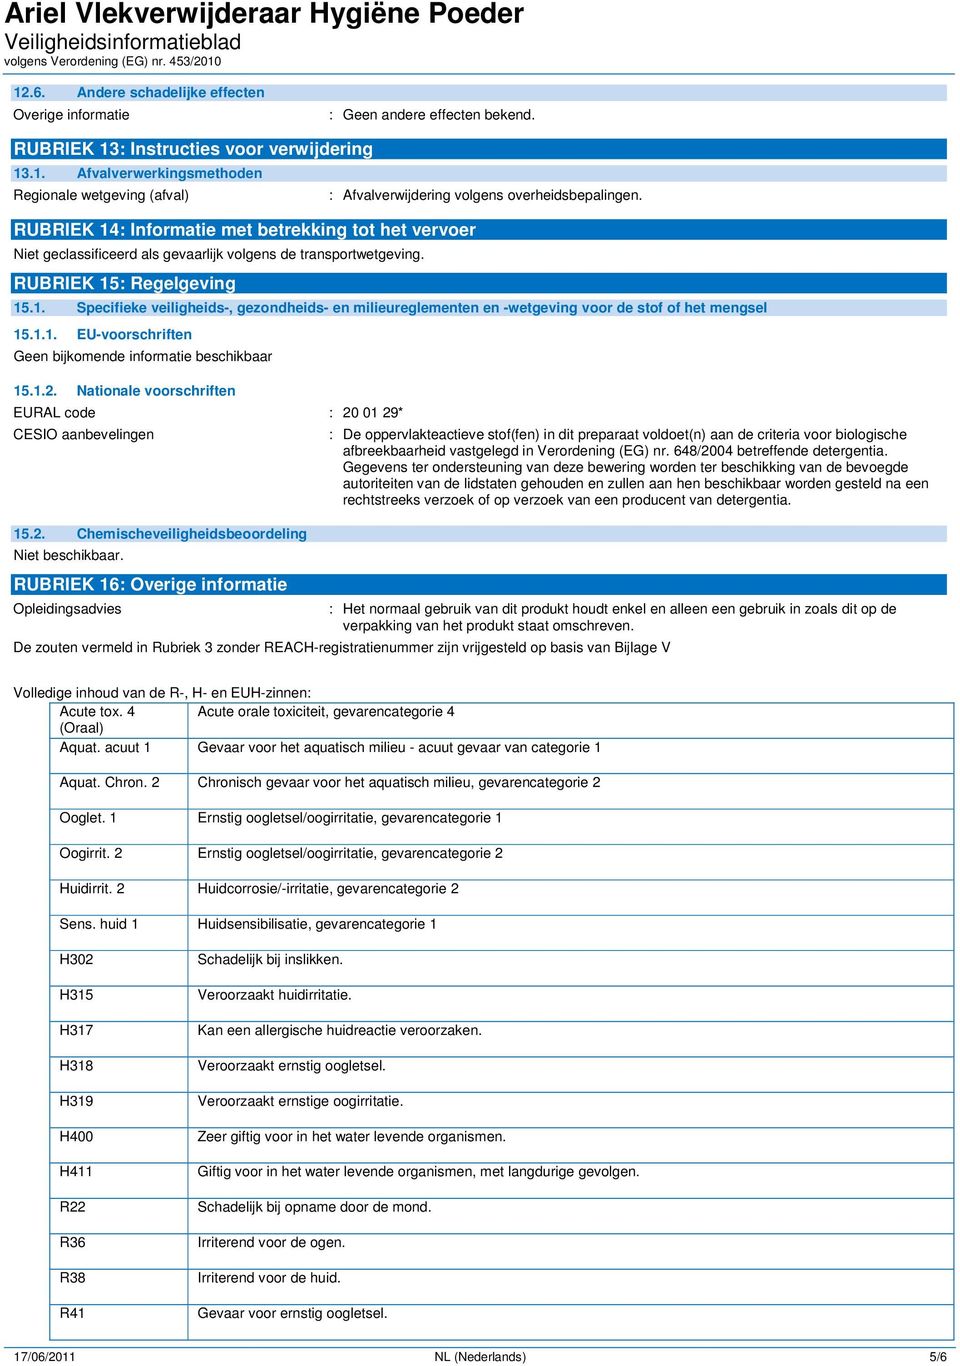 1.2. Nationale voorschriften EURAL code : 20 01 29* CESIO aanbevelingen 15.2. Chemischeveiligheidsbeoordeling Niet beschikbaar.